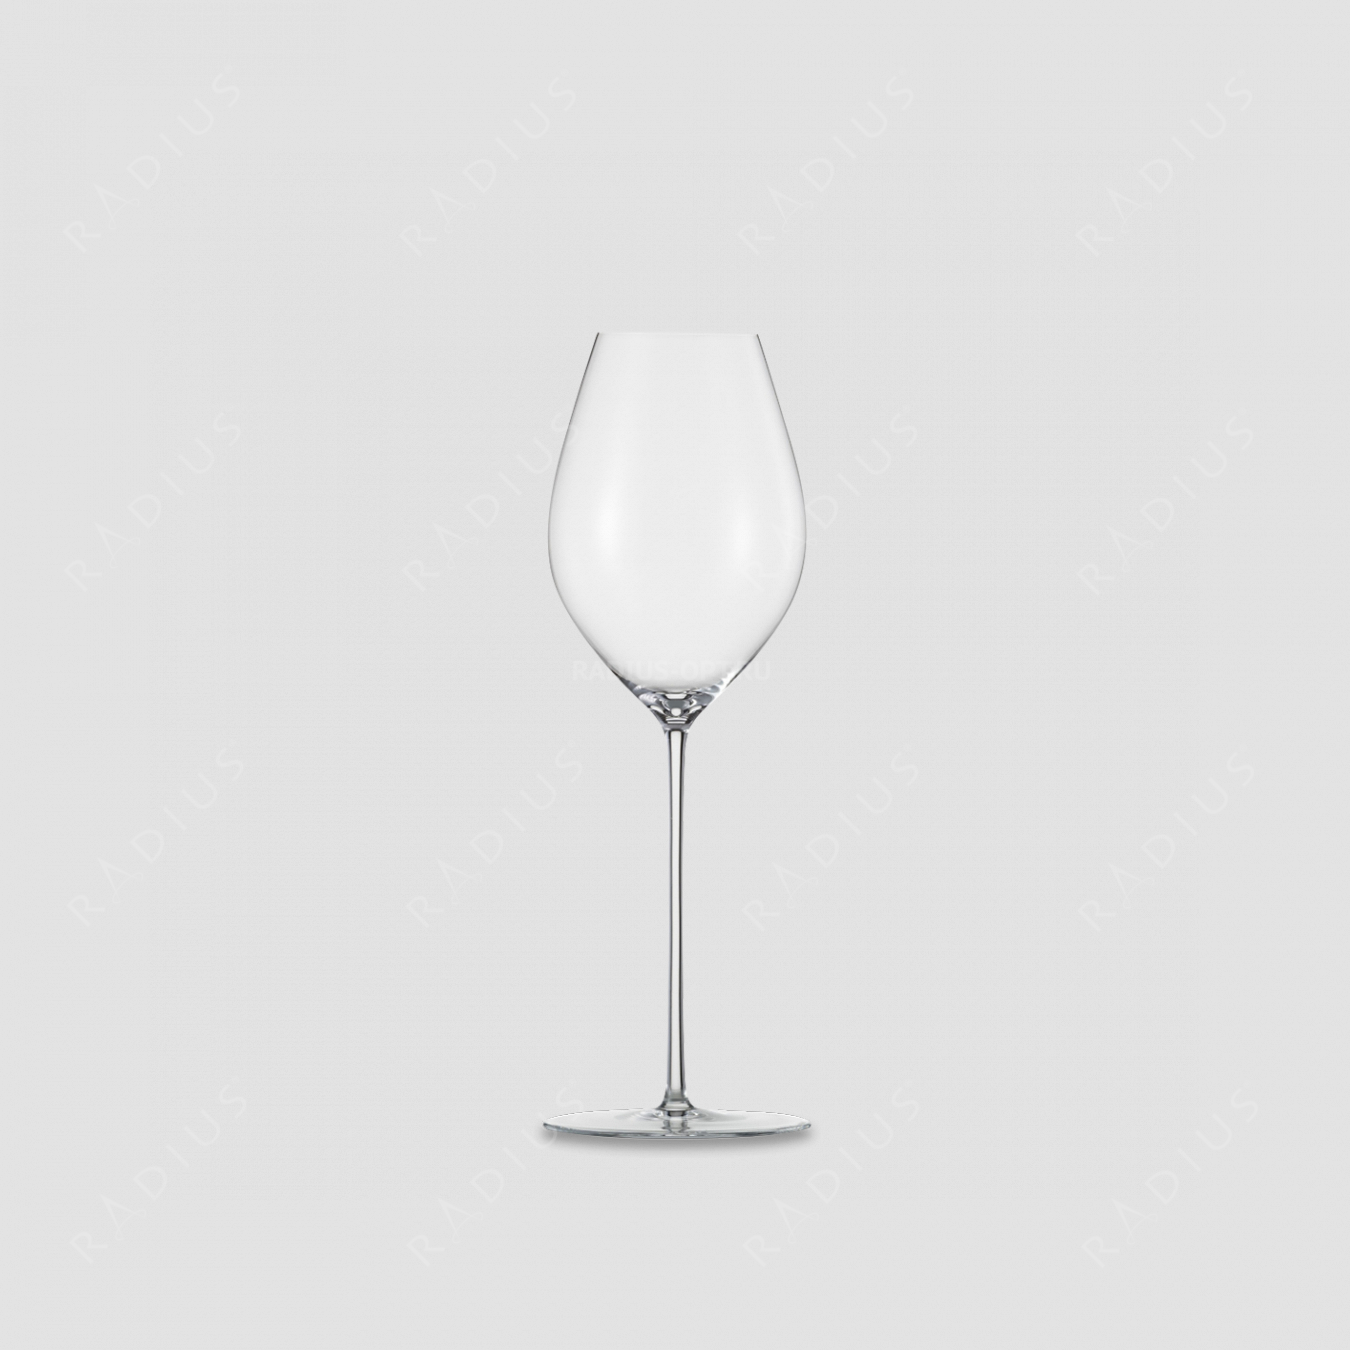 Хрустальный бокал для шампанского, объем: 400 мл, материал: бессвинцовый хрусталь, серия Unity Sensis Plus, EISCH, Германия